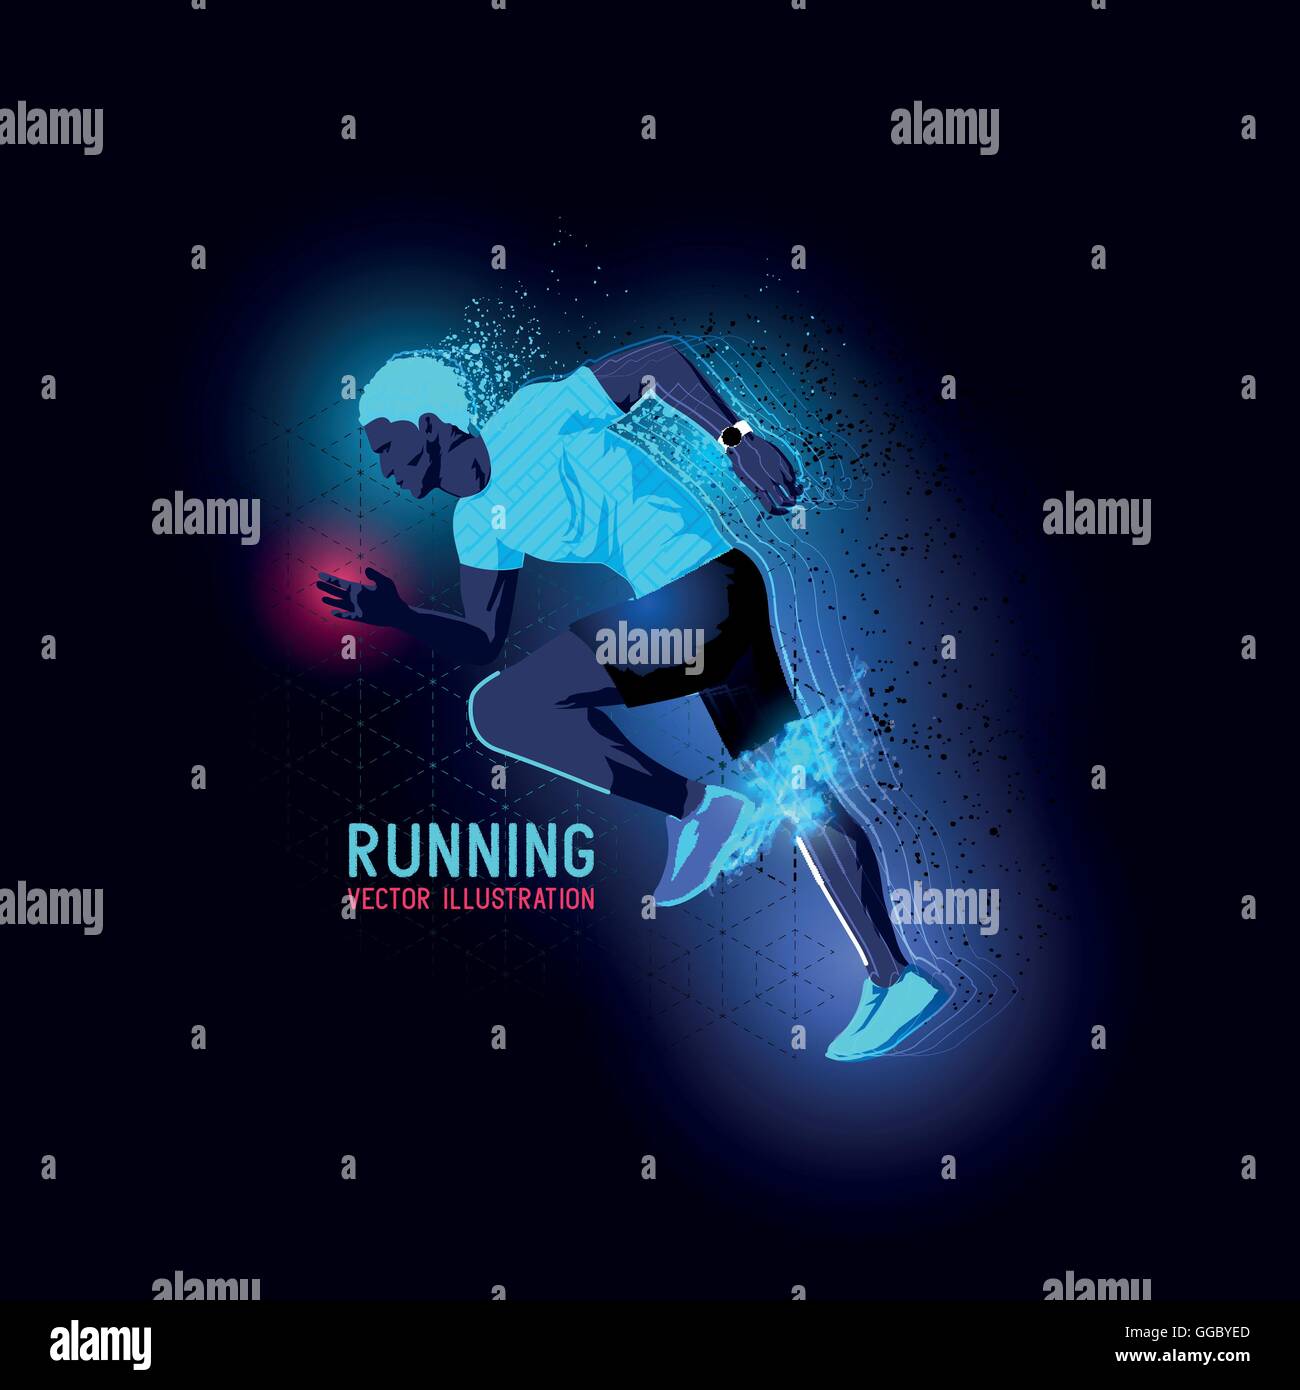 Neon leuchtende beleuchtete Silhouette eines Mannes laufen - Vektor-Illustration Stock Vektor